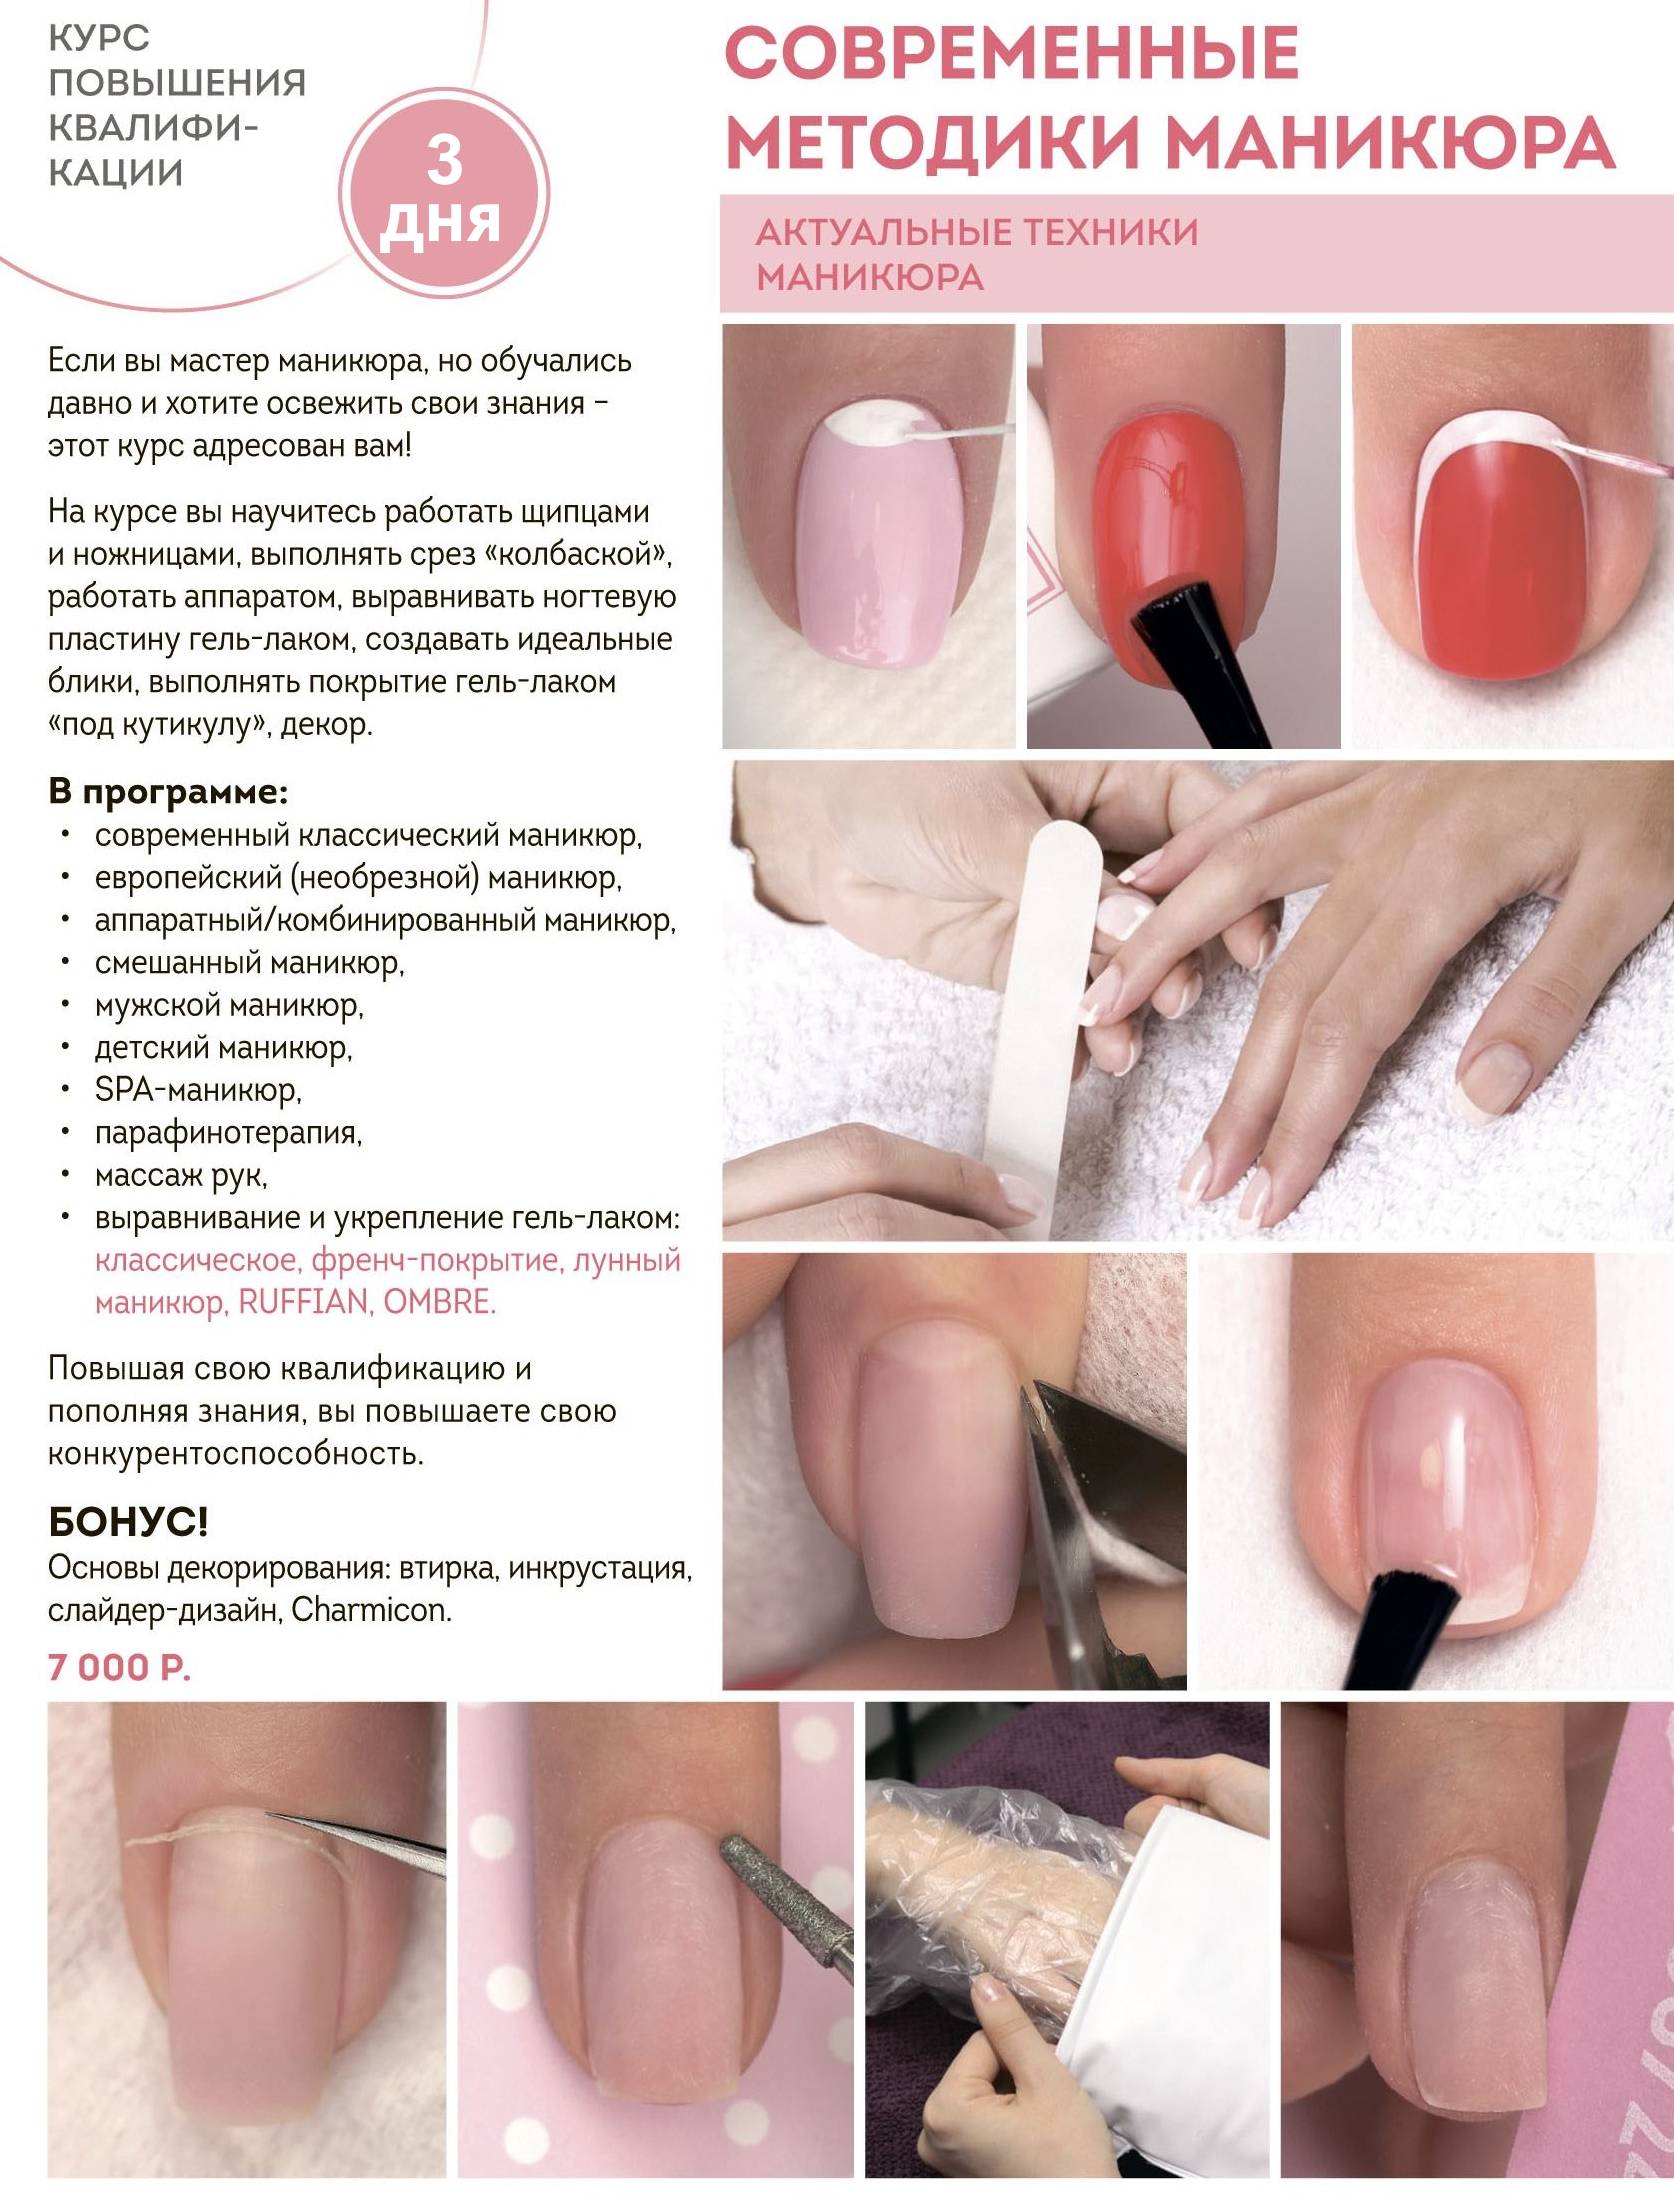 Портфолио мастера: как красиво фотографировать ногти для instagram - pro.bhub.com.ua